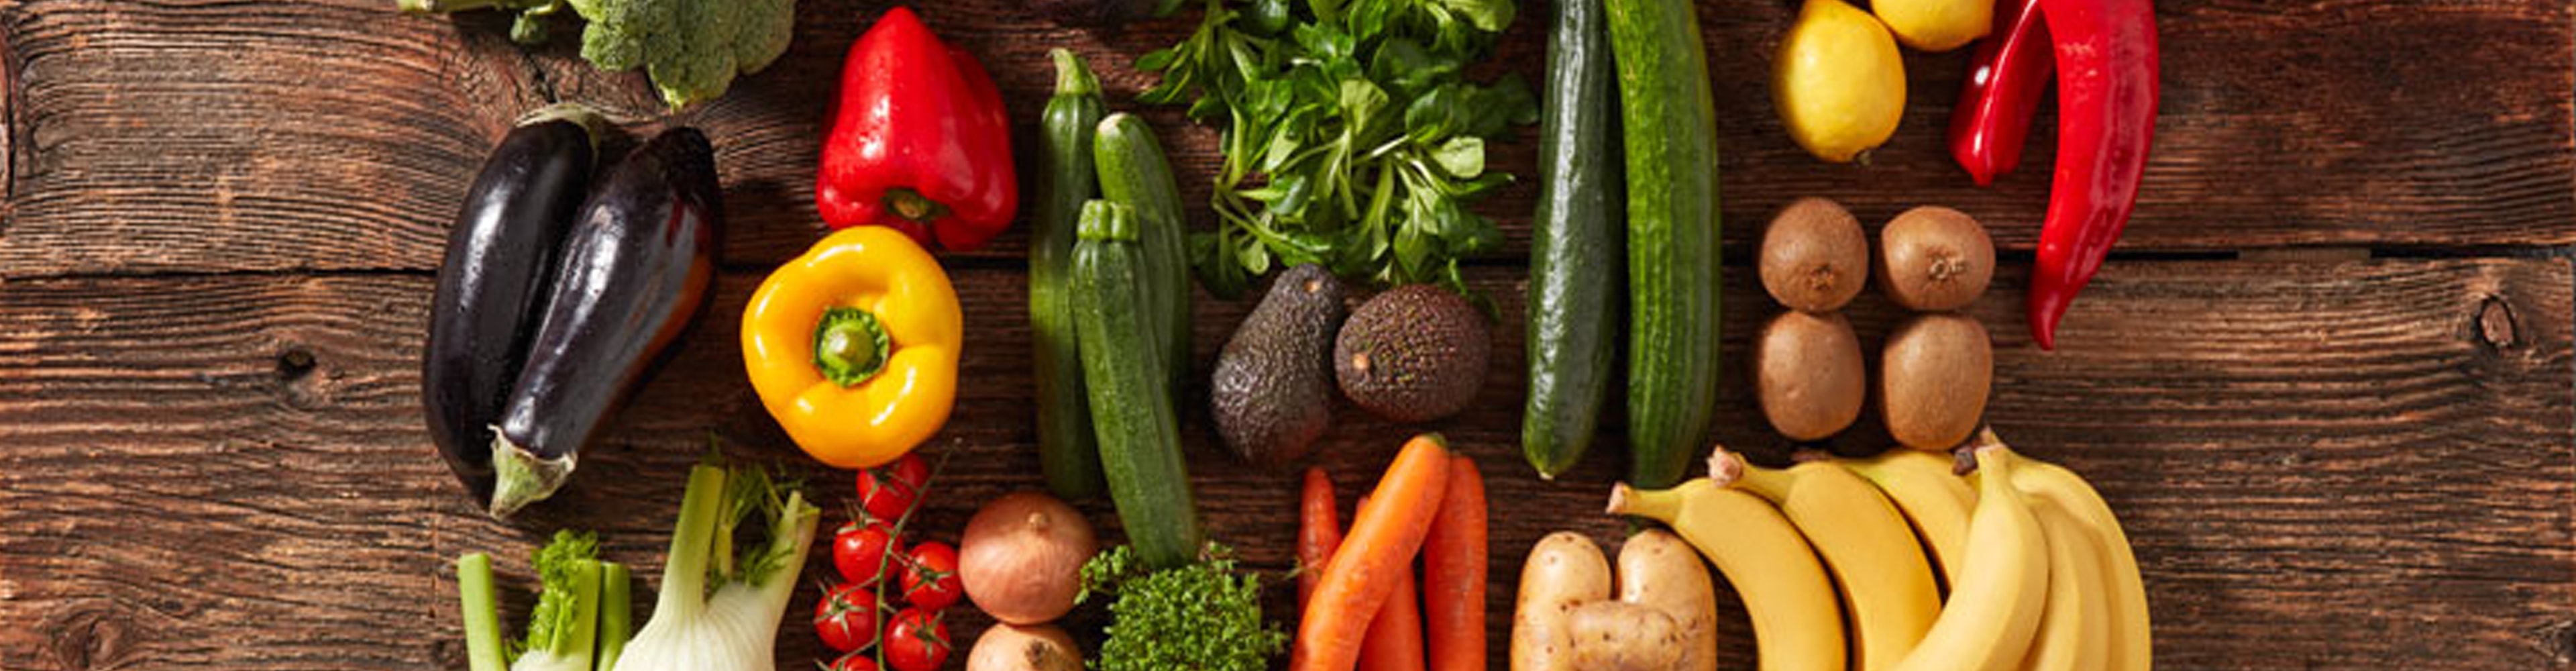 Les légumes et les fruits : c’est eux qui apportent de la couleur dans nos assiettes.